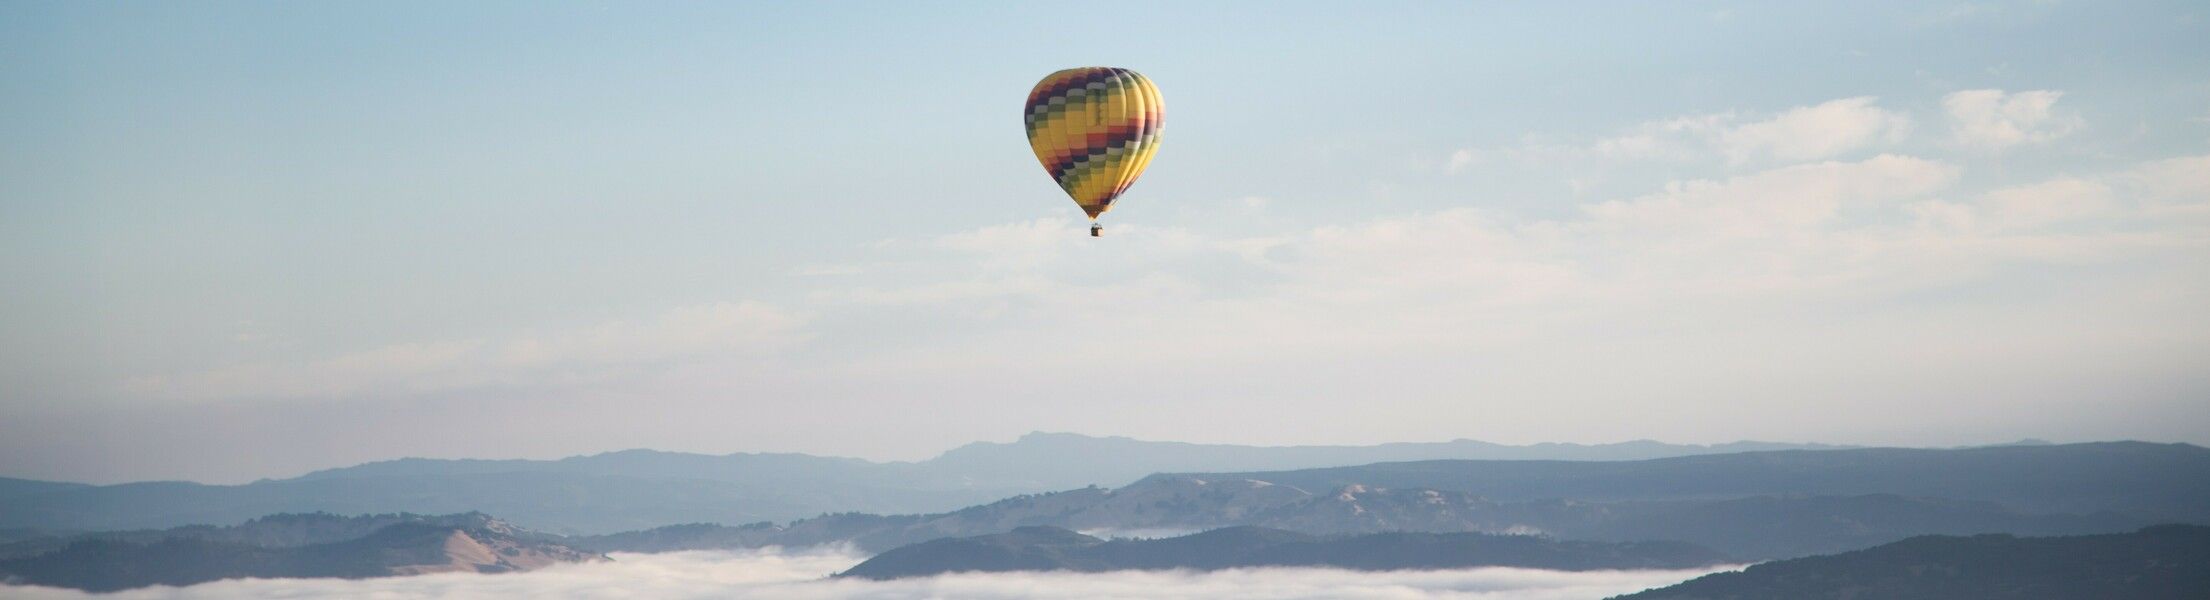 Heißluftballon in der Lut bei blauem Himmel